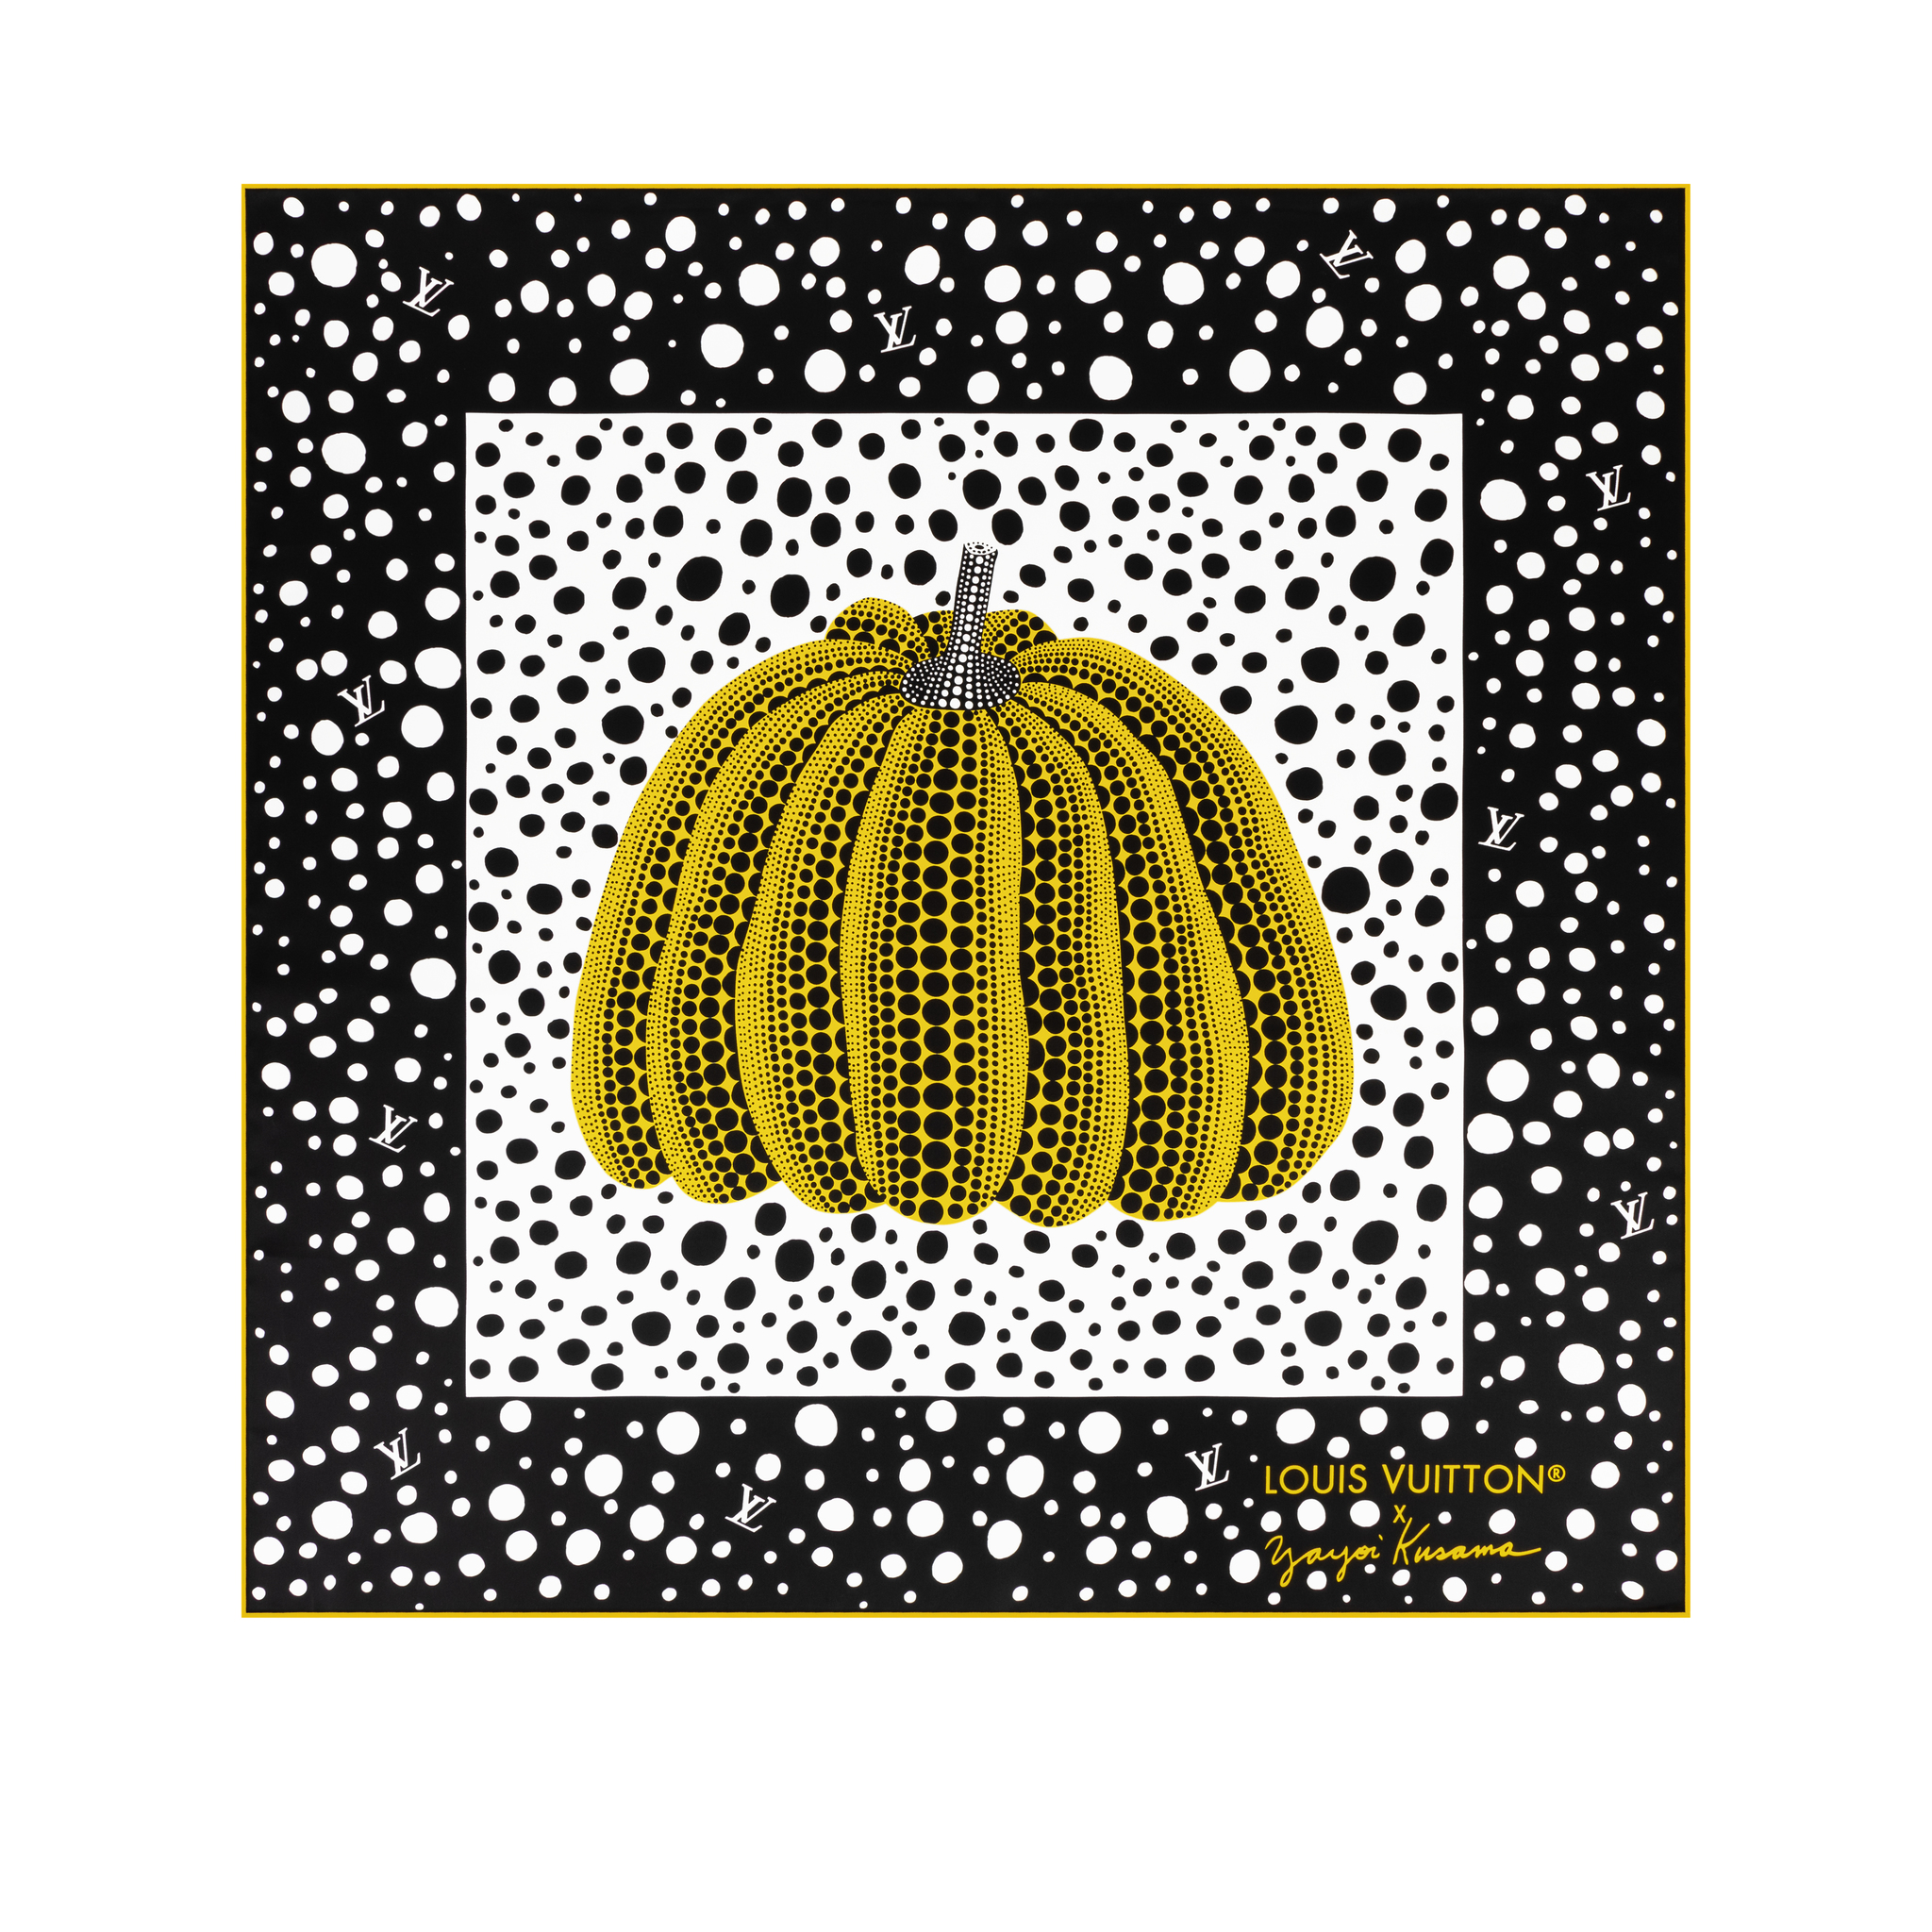 Pañuelo de seda "Infinity Dots" con su reconocible calabaza, de la colección Louis Vuitton x Yayoi Kusama.